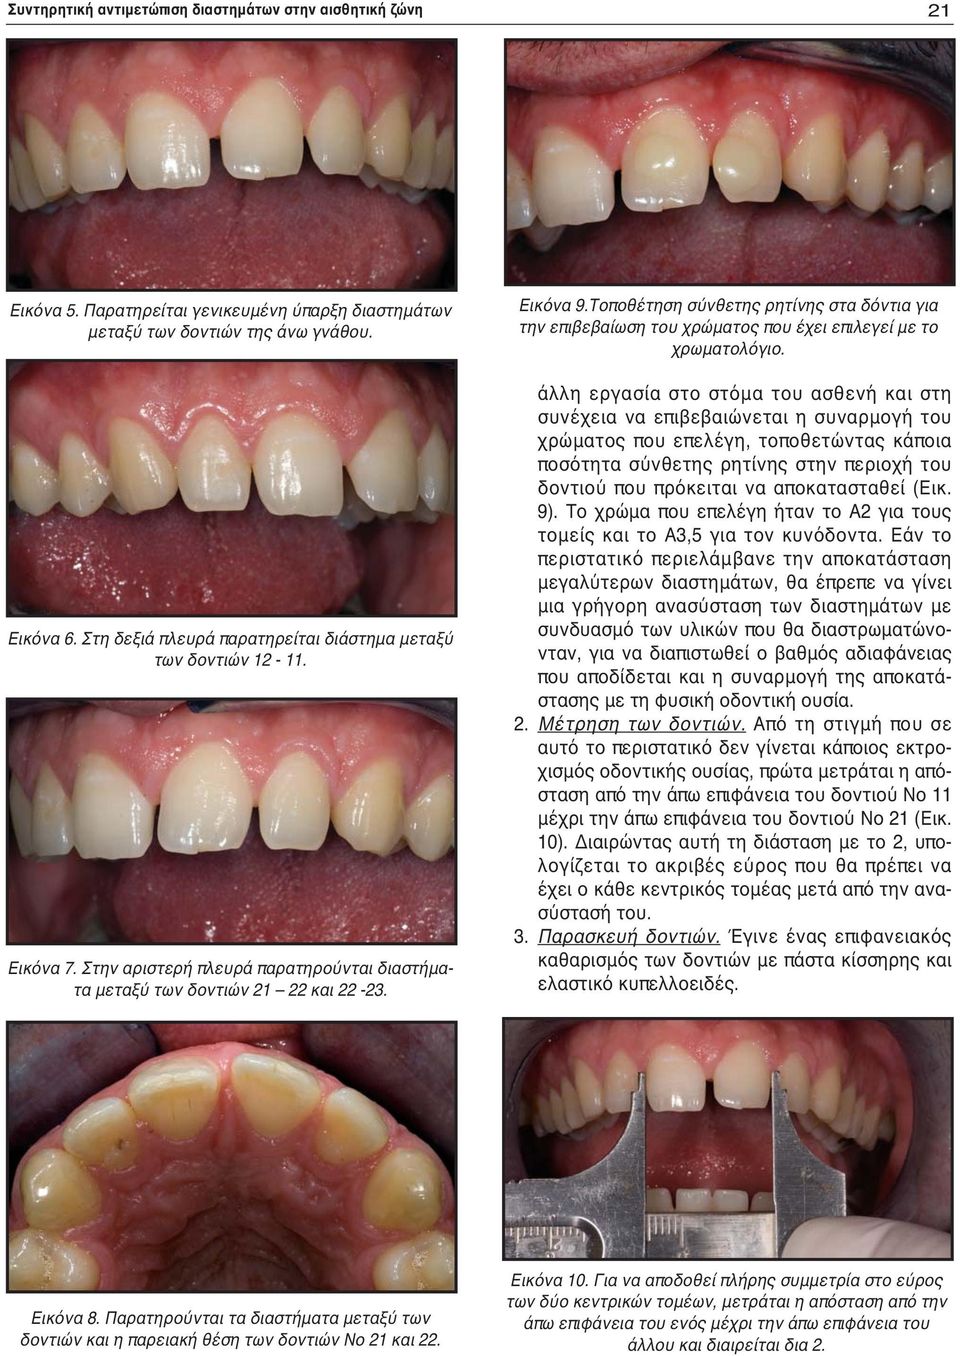 Τοποθέτηση σύνθετης ρητίνης στα δόντια για την επιβεβαίωση του χρώματος που έχει επιλεγεί με το χρωματολόγιο.